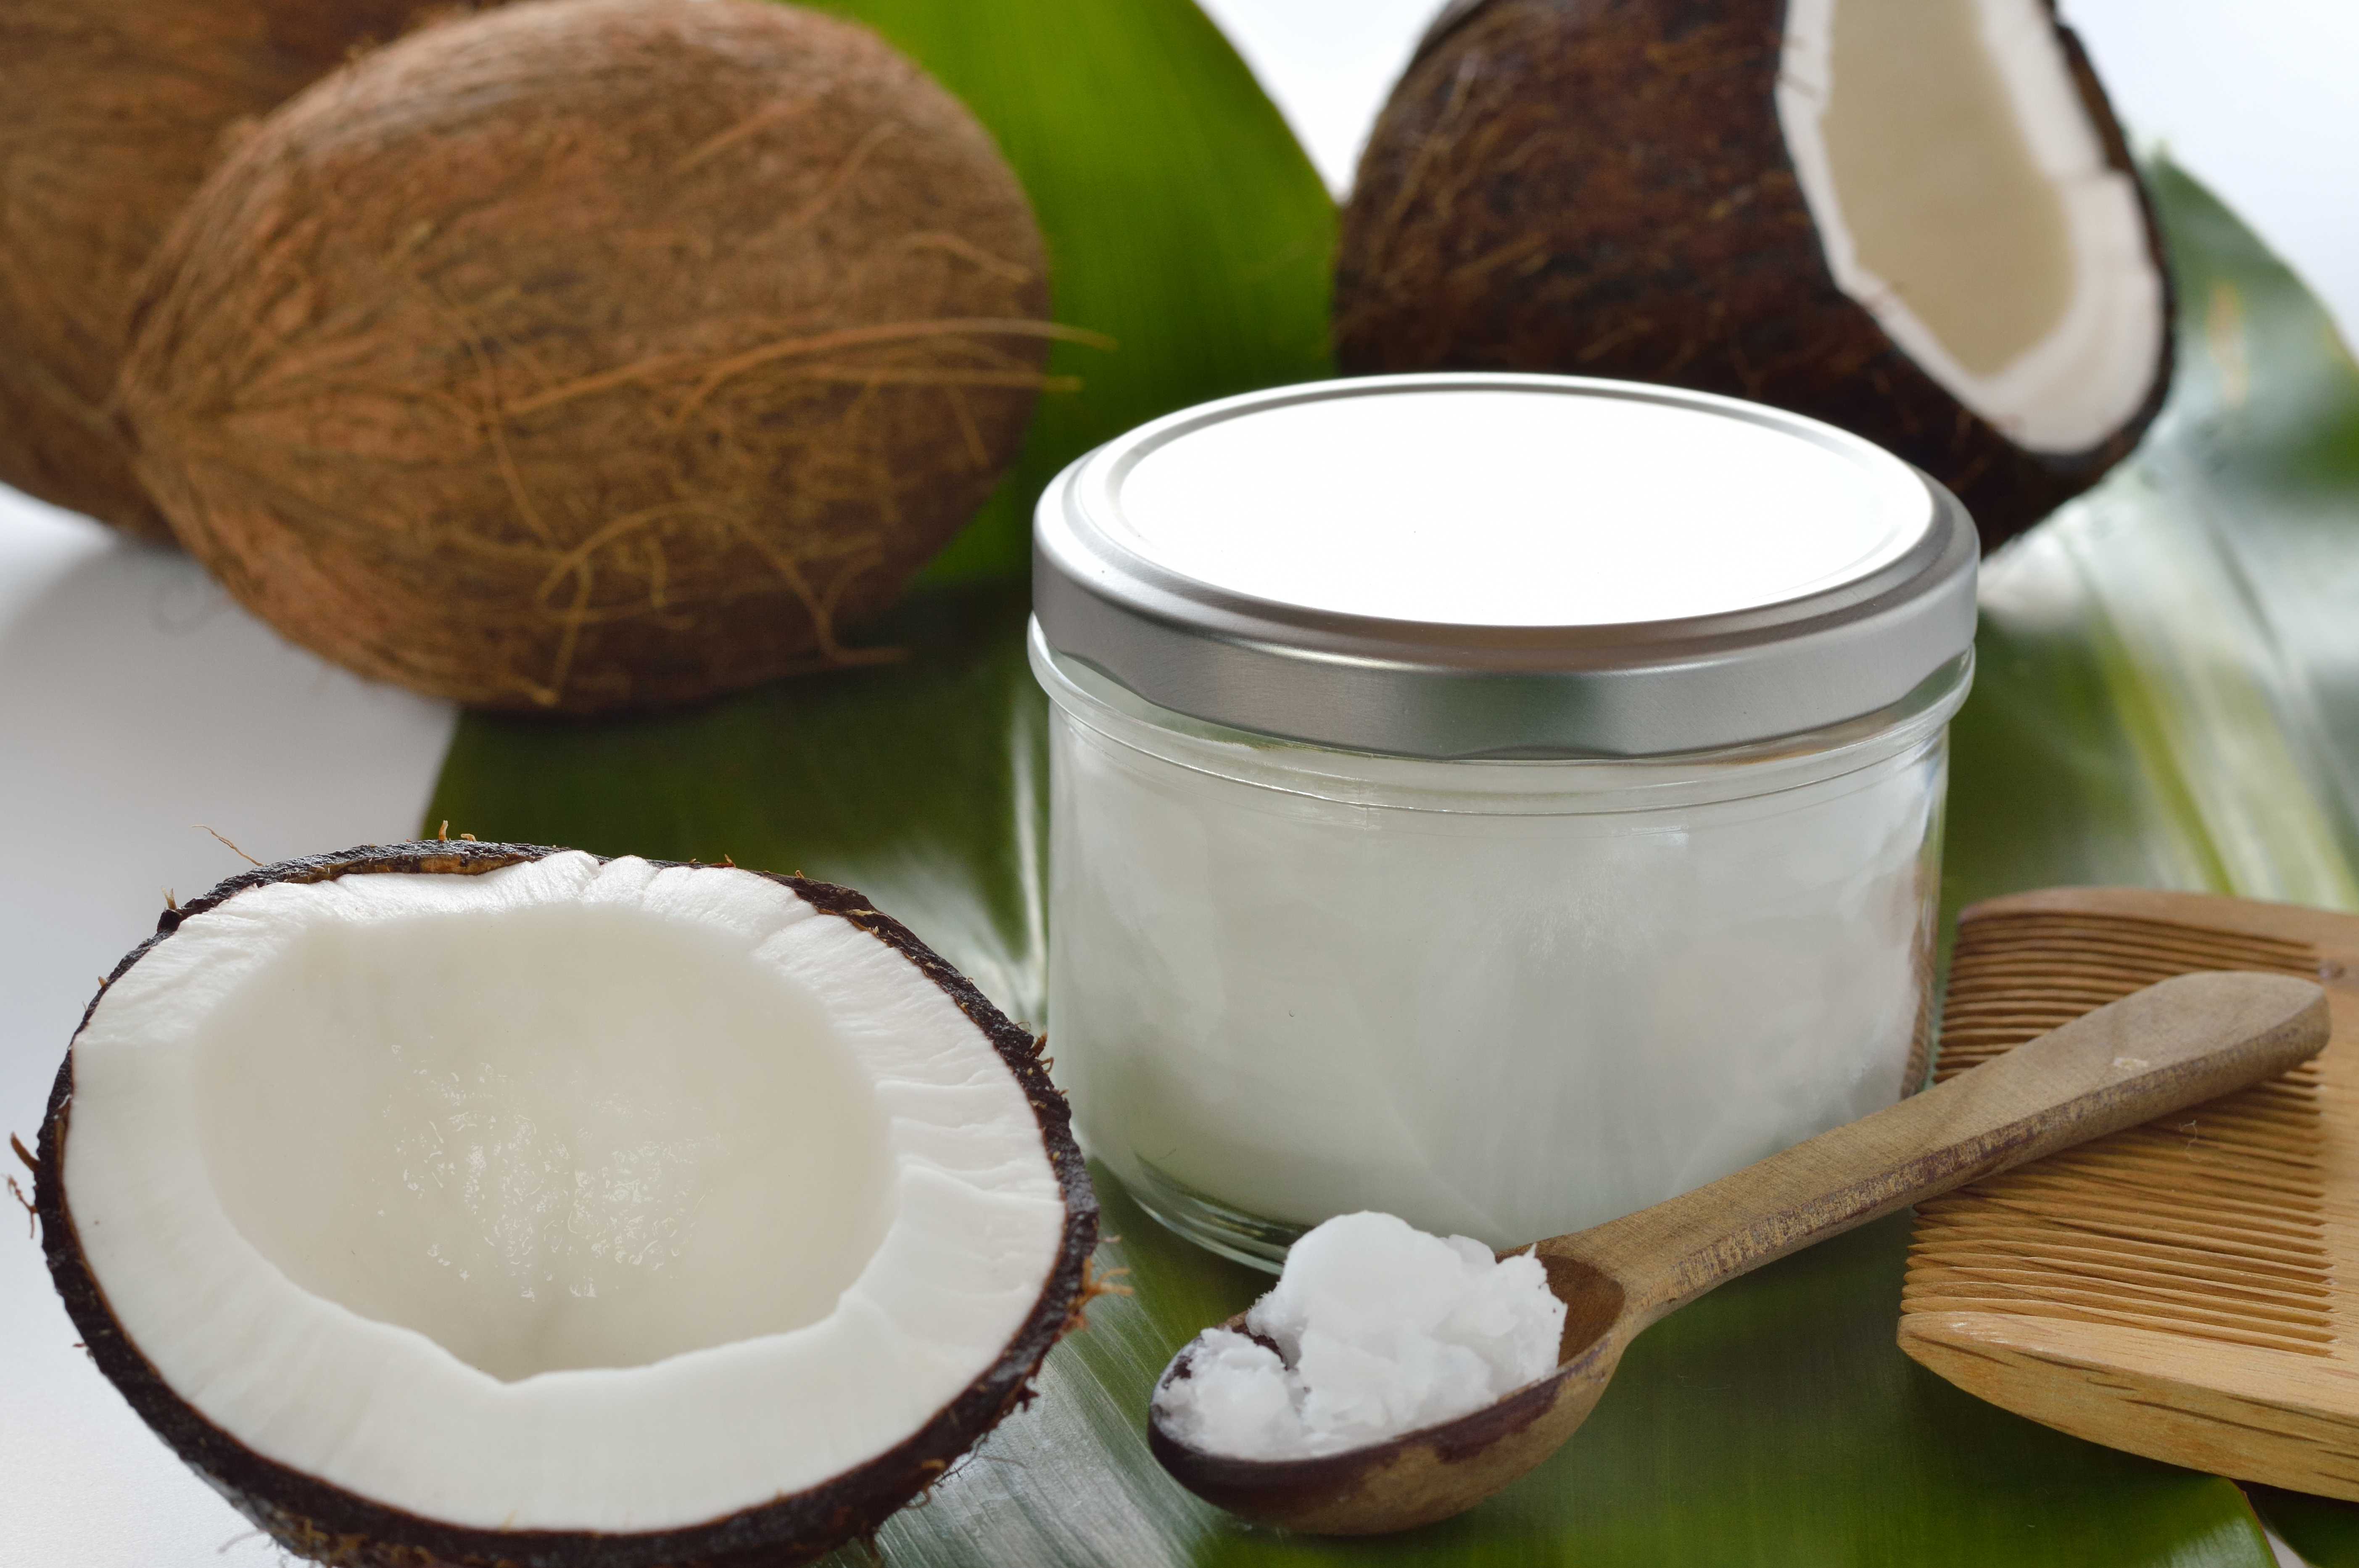 Na hladnijoj temperaturi kokosovo je ulje u čvrstom stanju pa ga se zove i kokosova mast